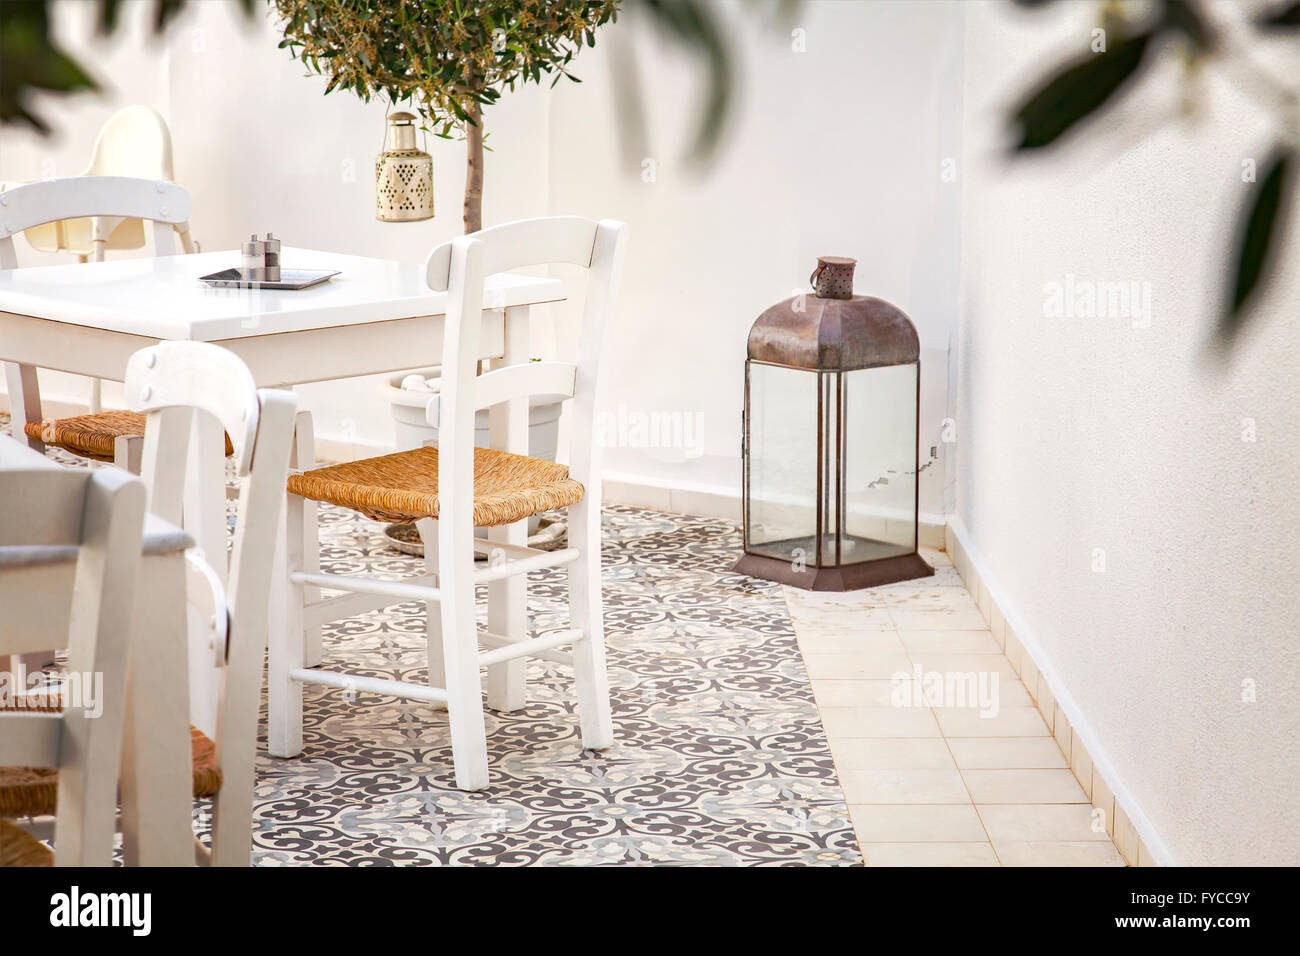 Immagine di un greco romantico cortile coperto. Foto Stock